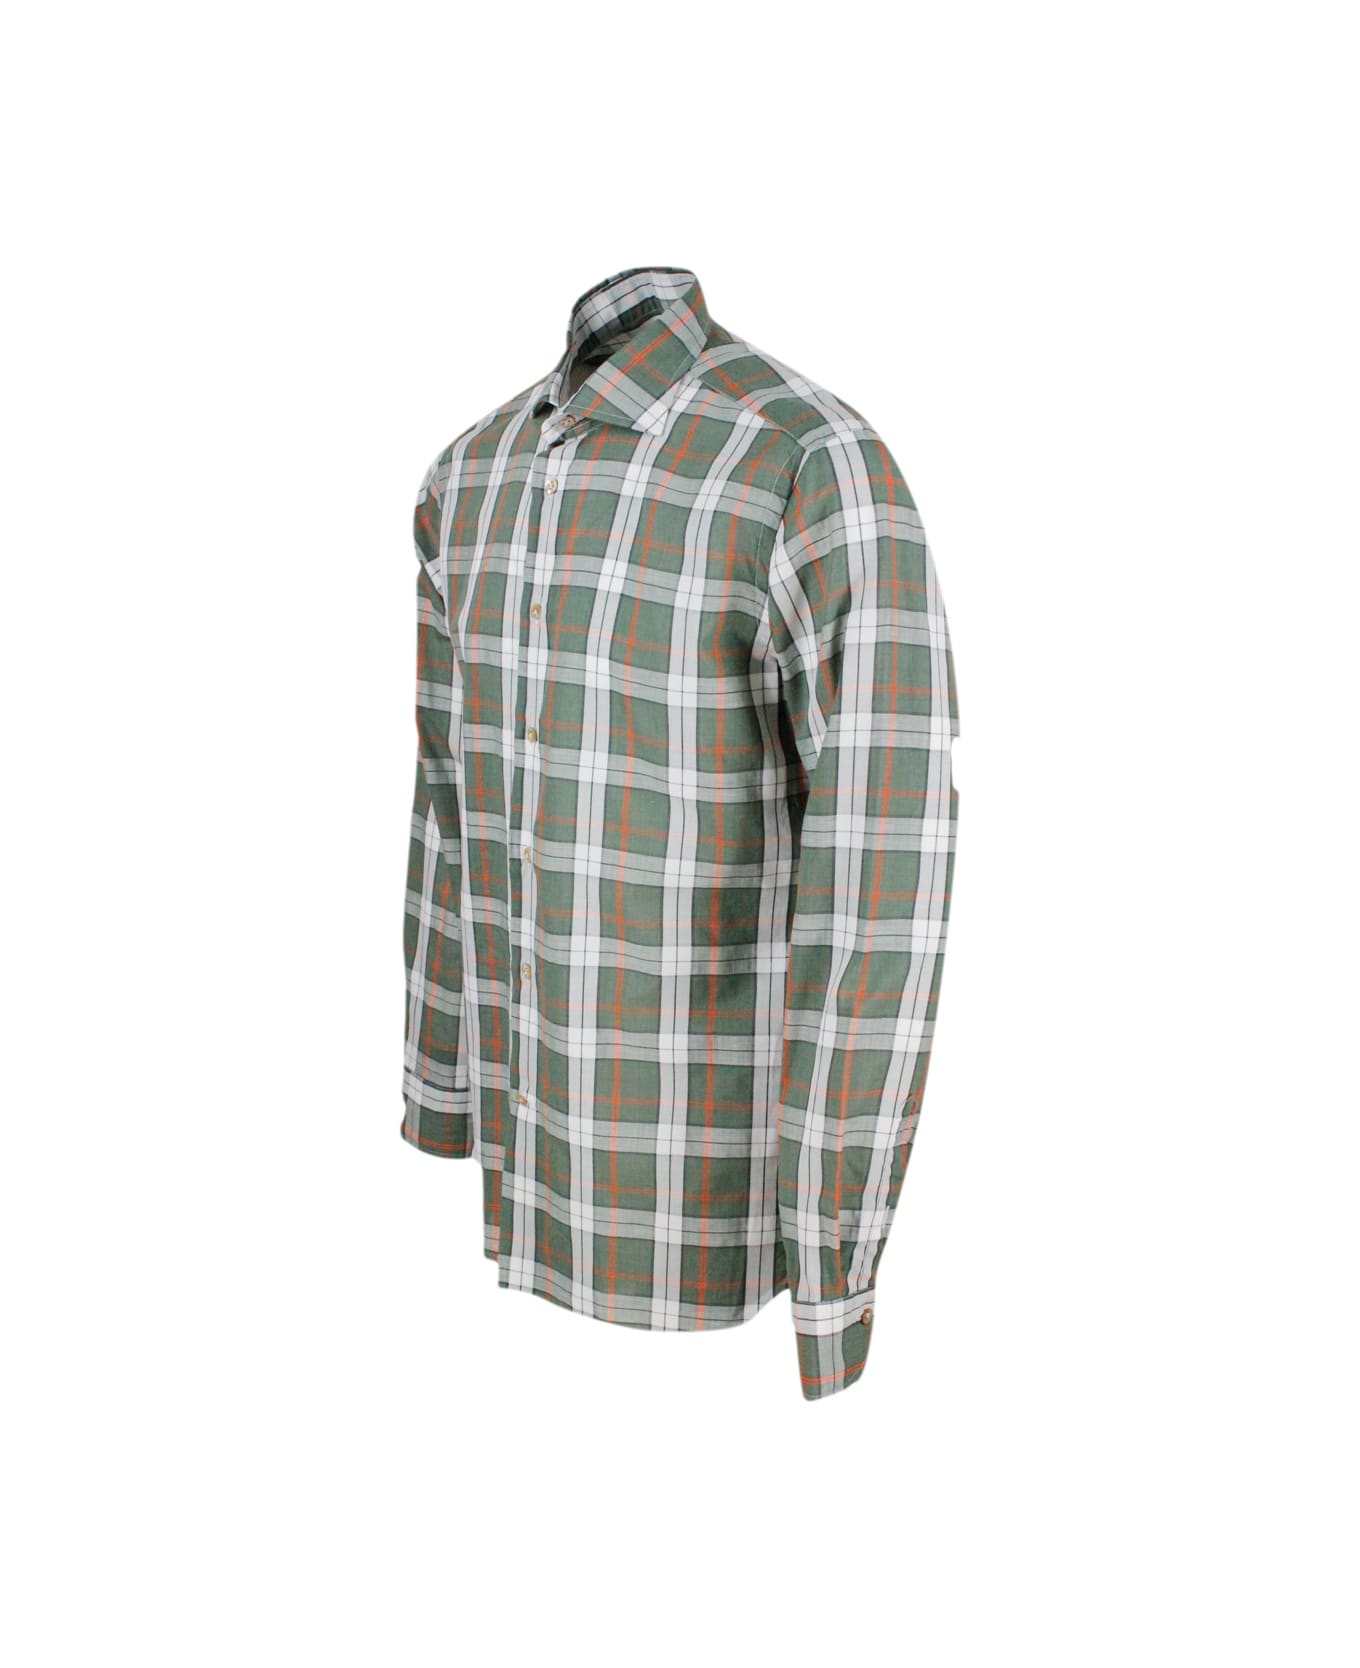 Borriello Napoli Checked Shirt In Cotton And Linen - Green